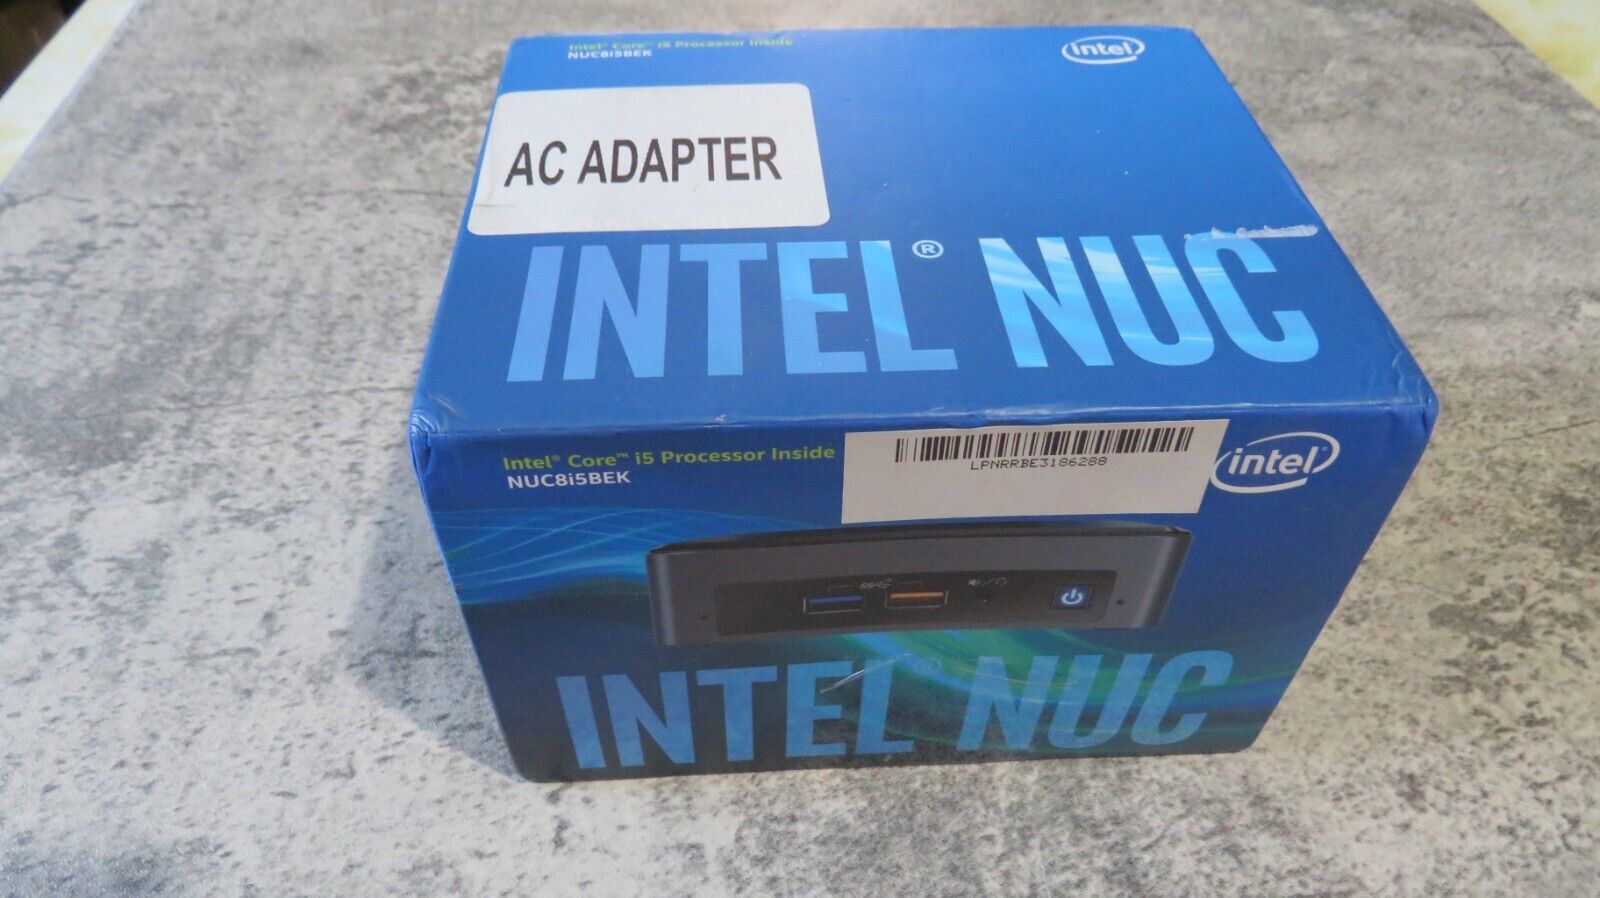 Intel NUC 8 Mainstream Mini PC Kit (NUC8i5BEK) - Core i5